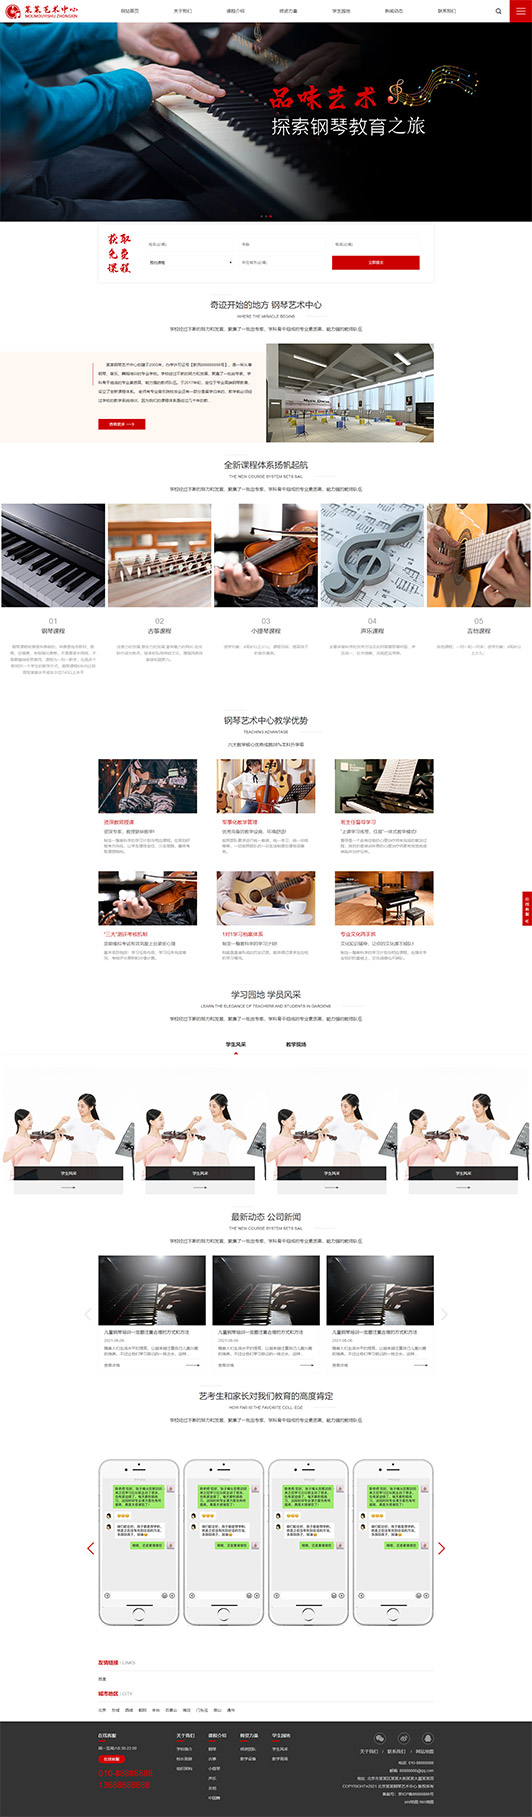 晋中钢琴艺术培训公司响应式企业网站